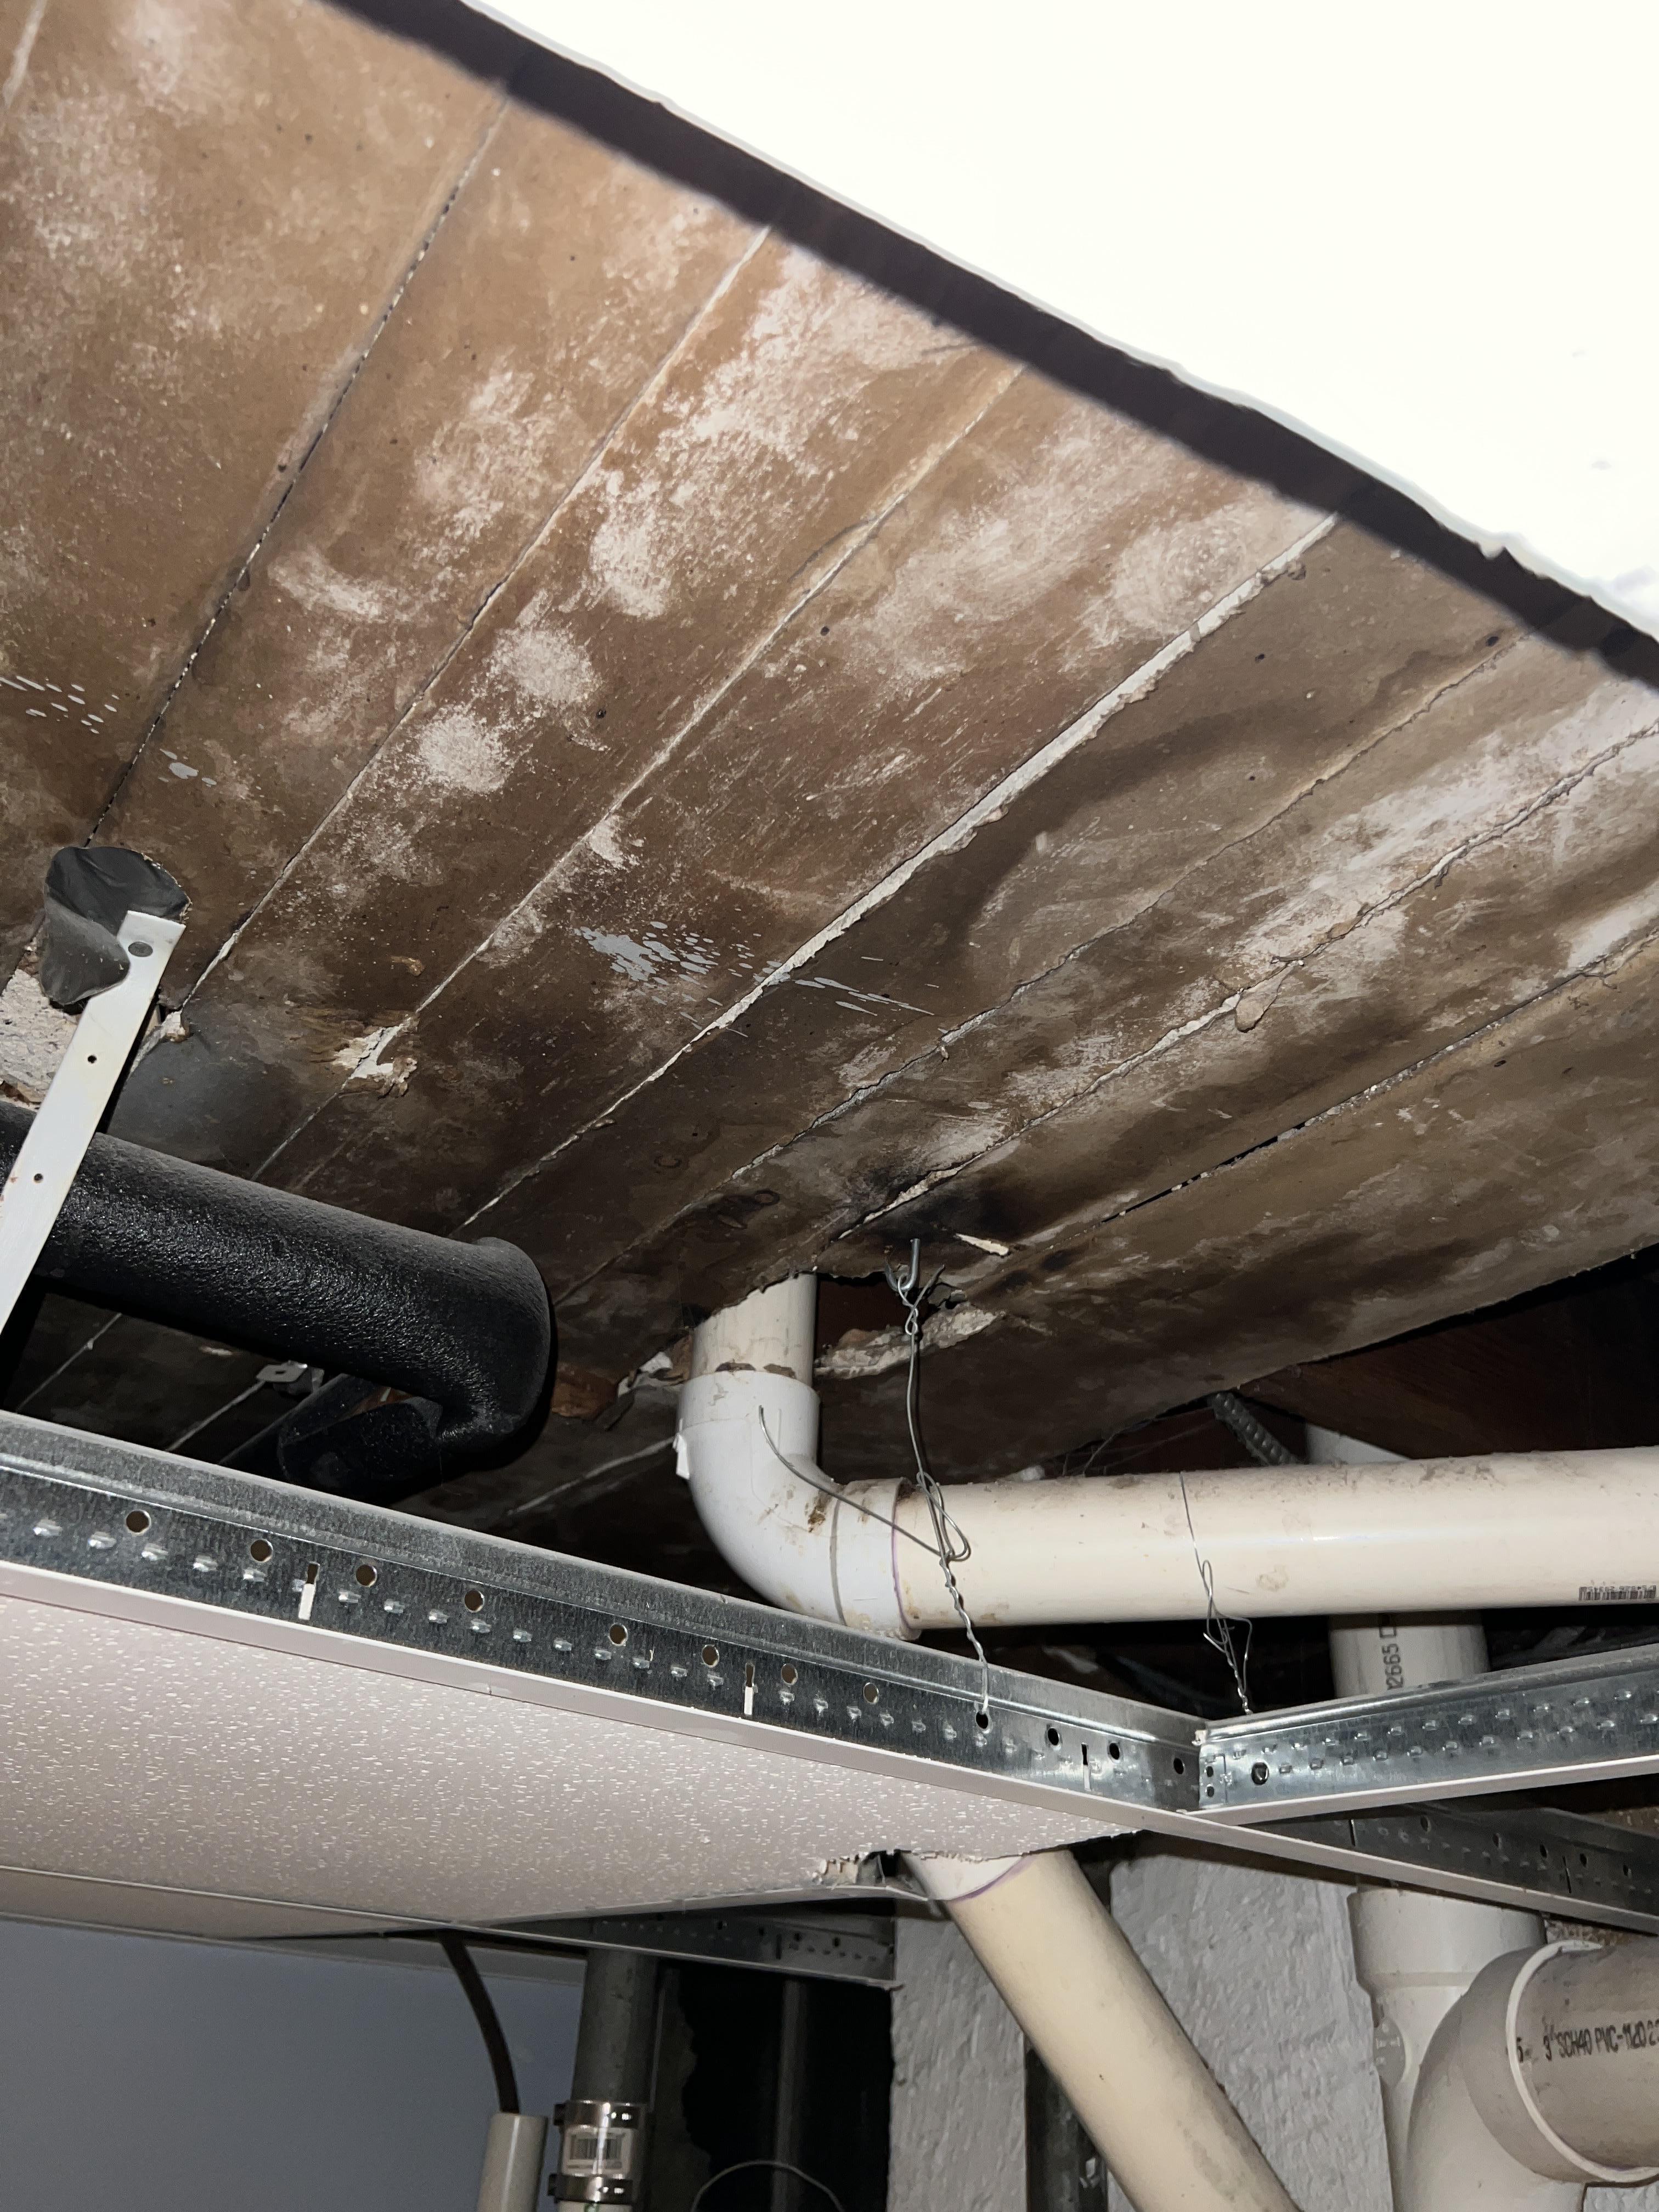 Leaky Pipe in Ceiling